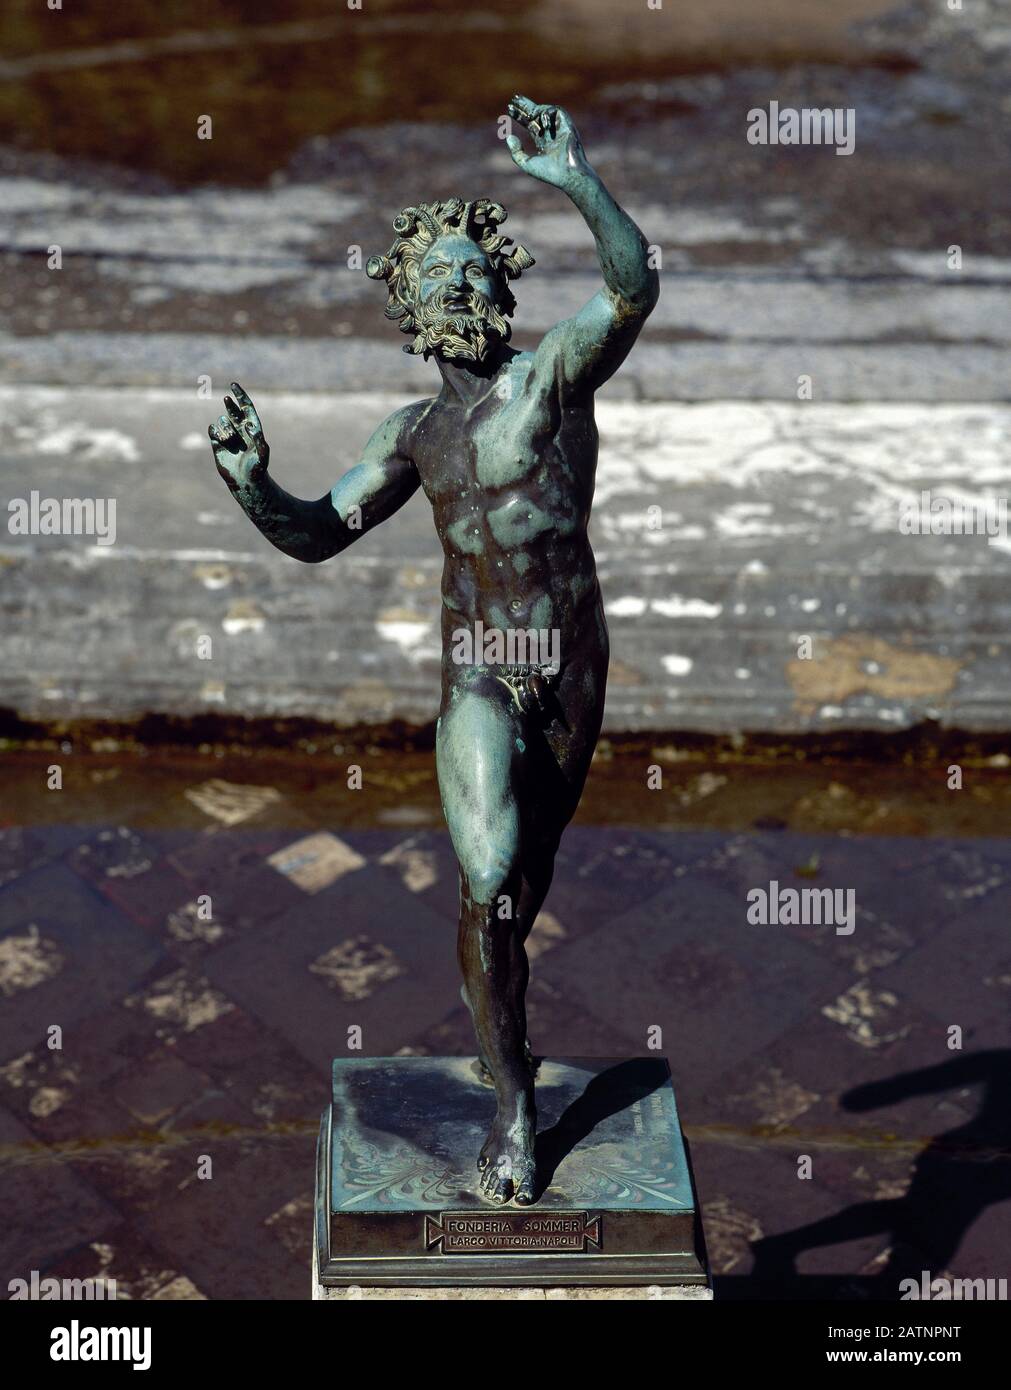 Italia, Pompei. Casa del Faun. Faun Danzante. Impluvium nell'atrio. Copia (la scultura originale è conservata nel Museo Archeologico di Napoli). Foto Stock